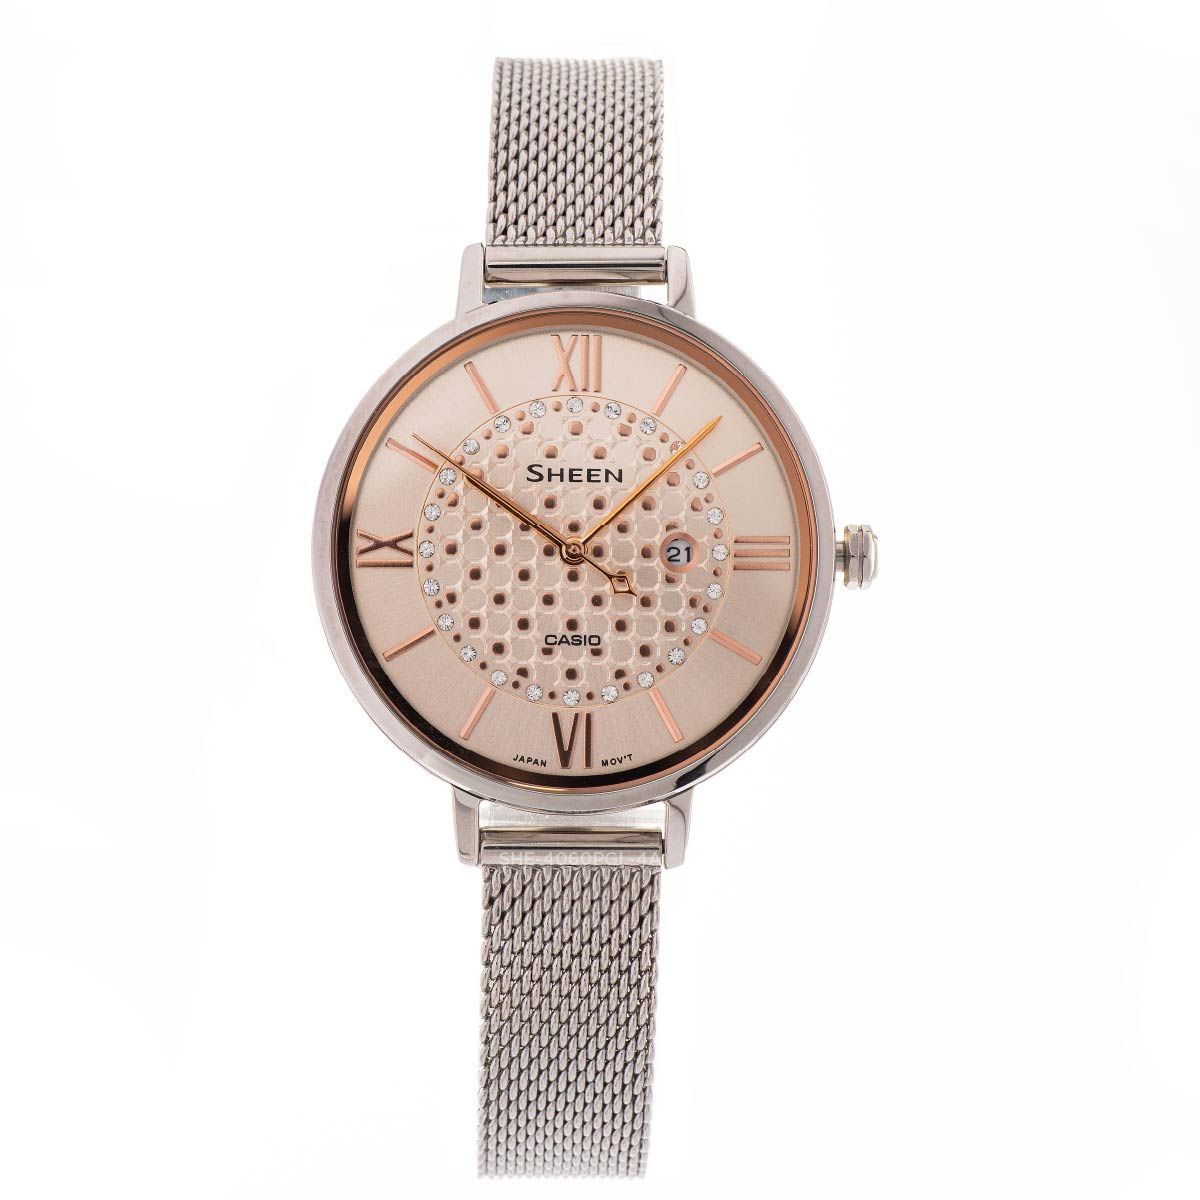 casio sheen she-4059m-4a, đồng hồ casio chính hãng, đồng hồ nữ, pin/quartz, kính khoáng, dây kim loại, chống nước 5atm, sku/upc/mpn: 4549526259203 - Ảnh 2